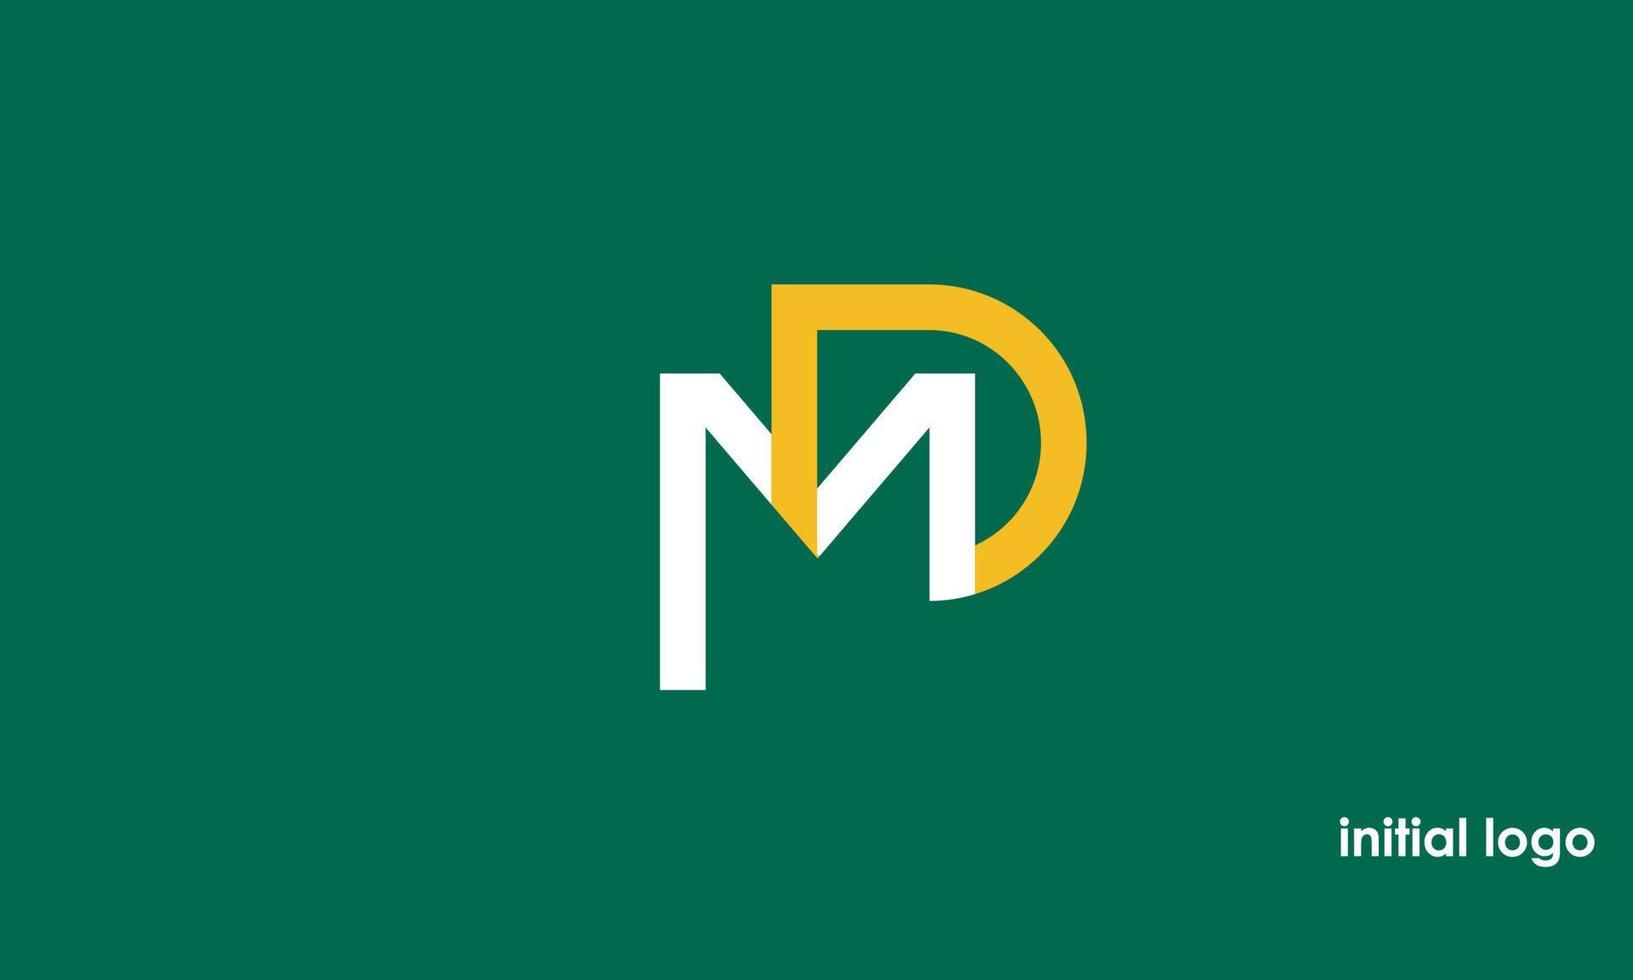 alfabeto letras iniciales monograma logo md, dm, m y d vector